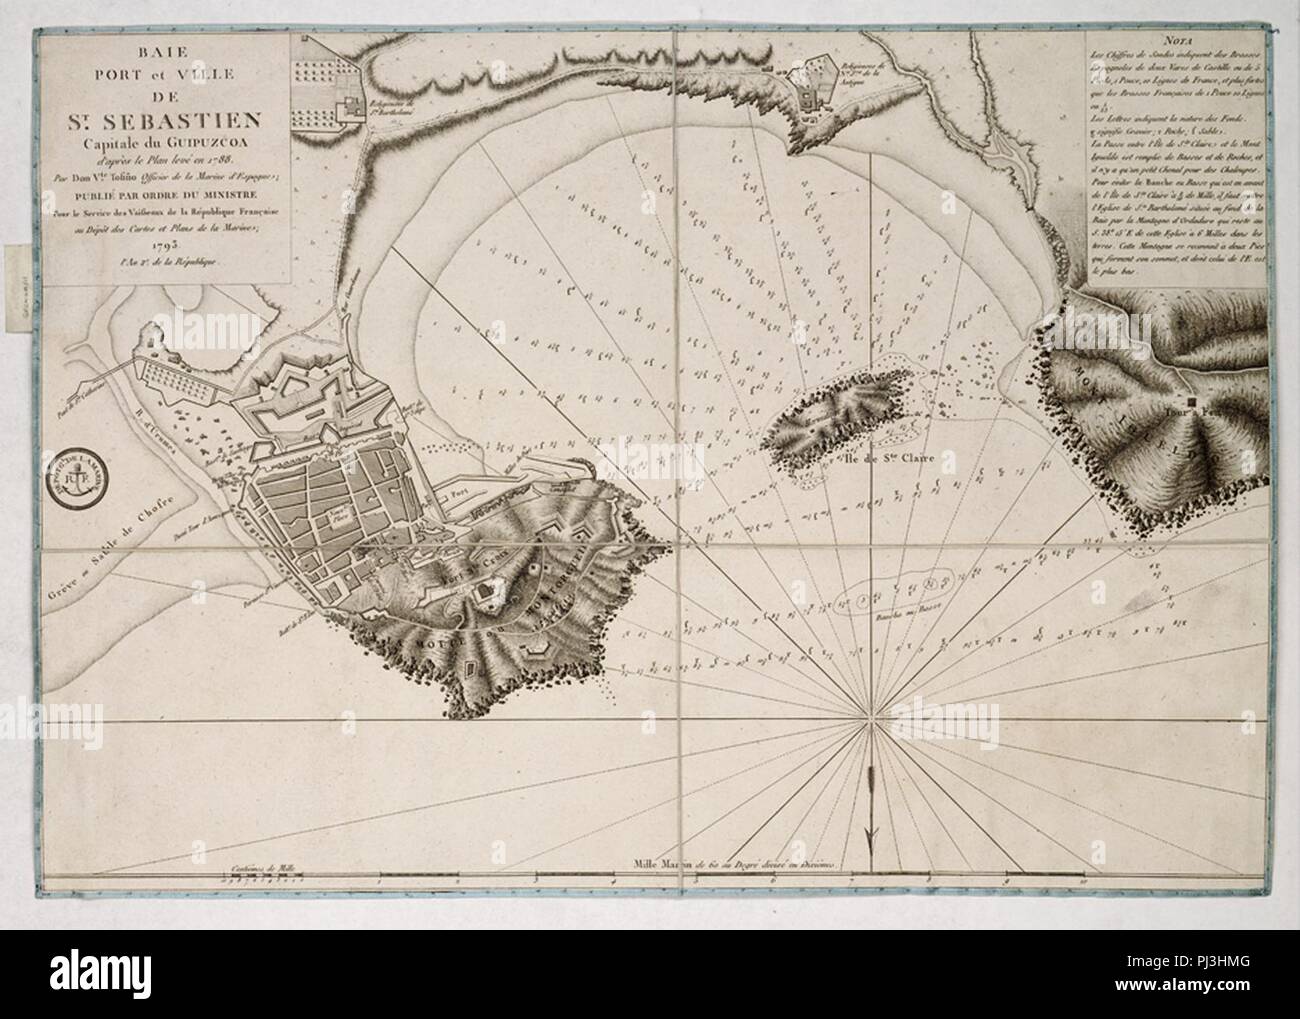 Baie port et ville de St Sebastien capitale du Guipuzcoa, d'apres le plan  leve en 1788 par Don Vte. Tofino officier de la Marine d'Espagne; publie  par ordre du Ministre pour le